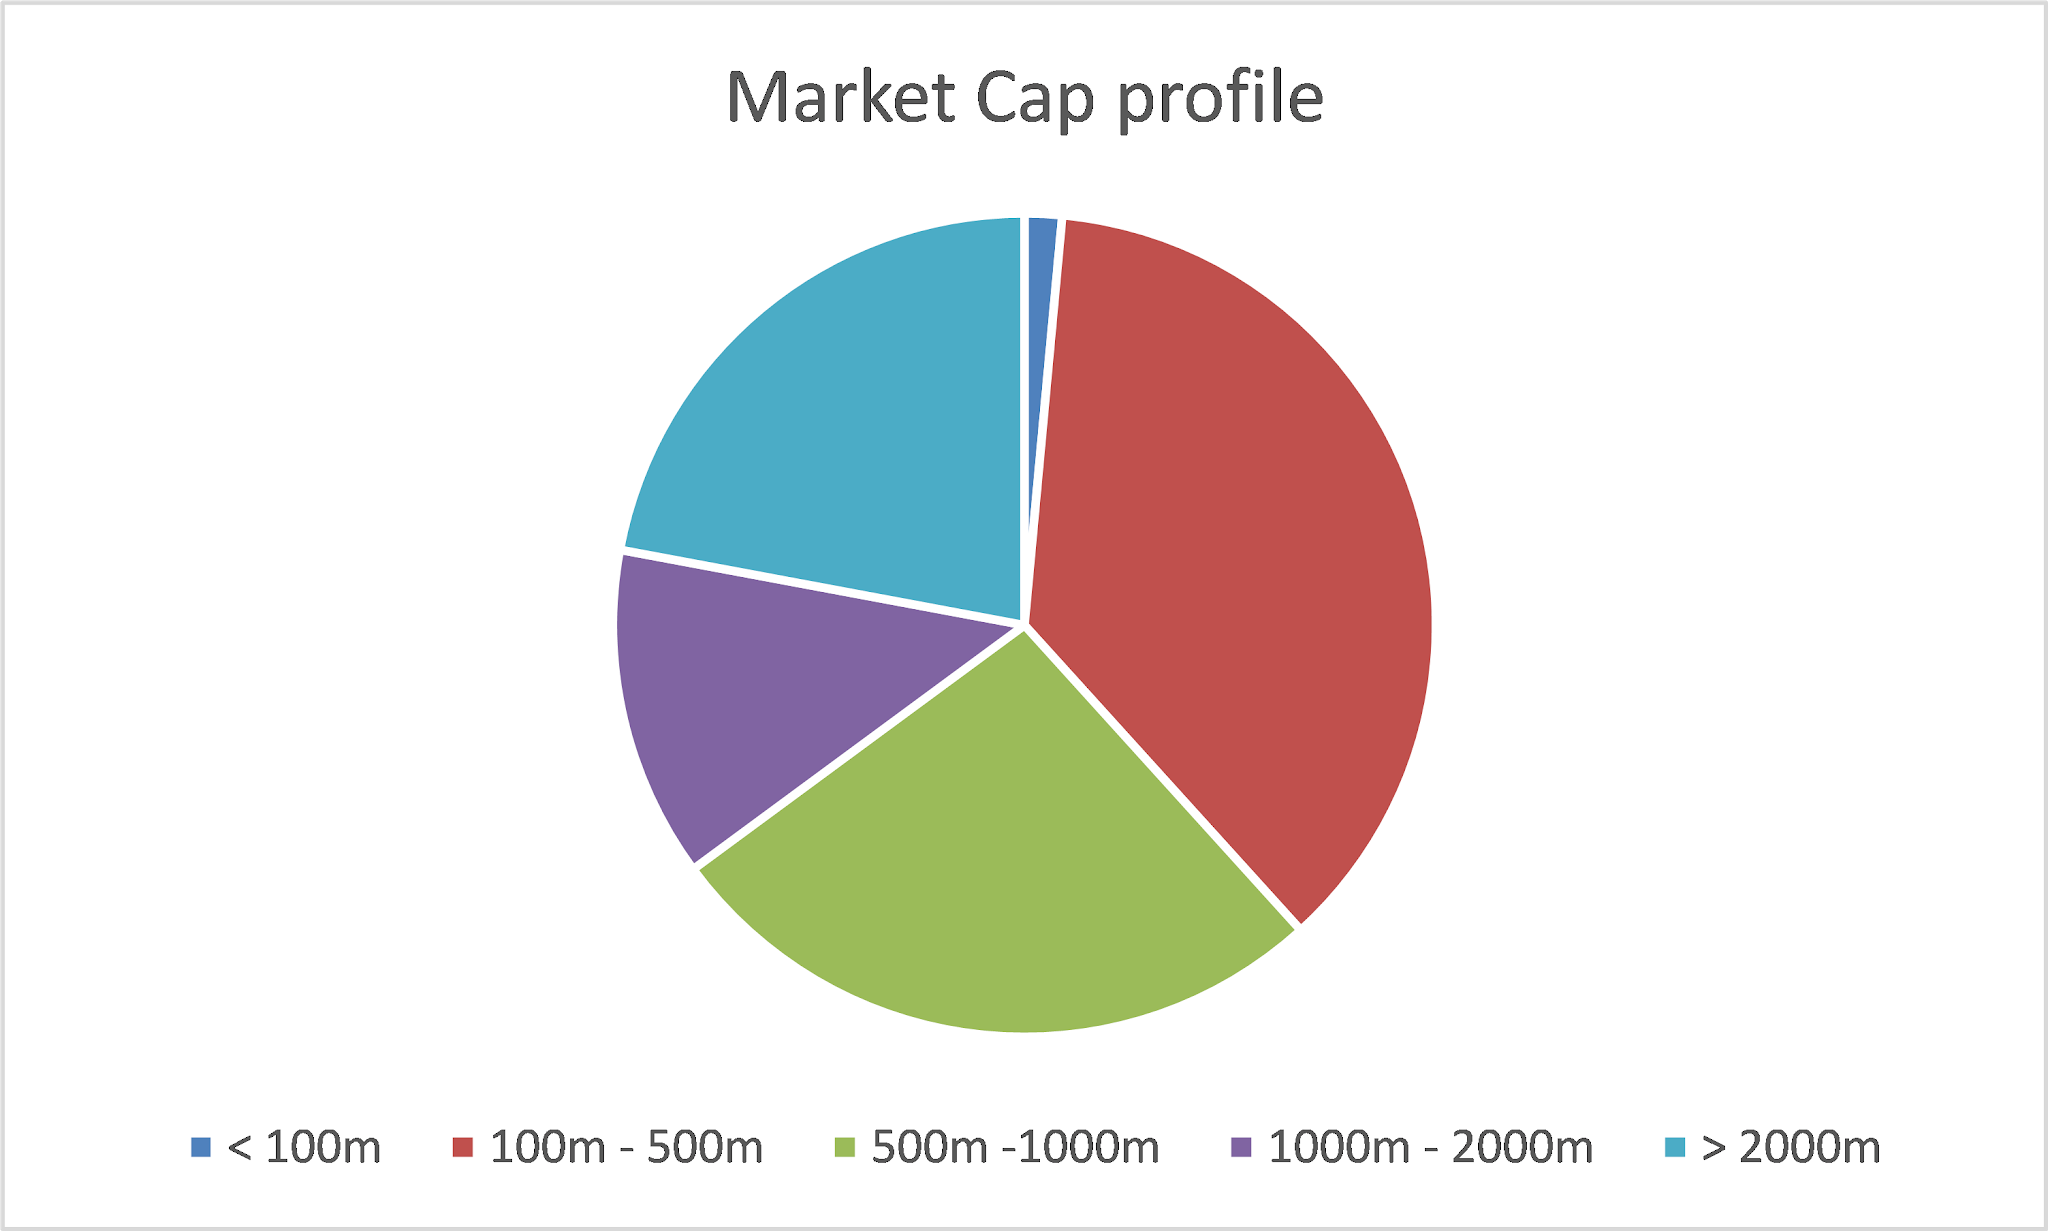 My portfolio market cap profile